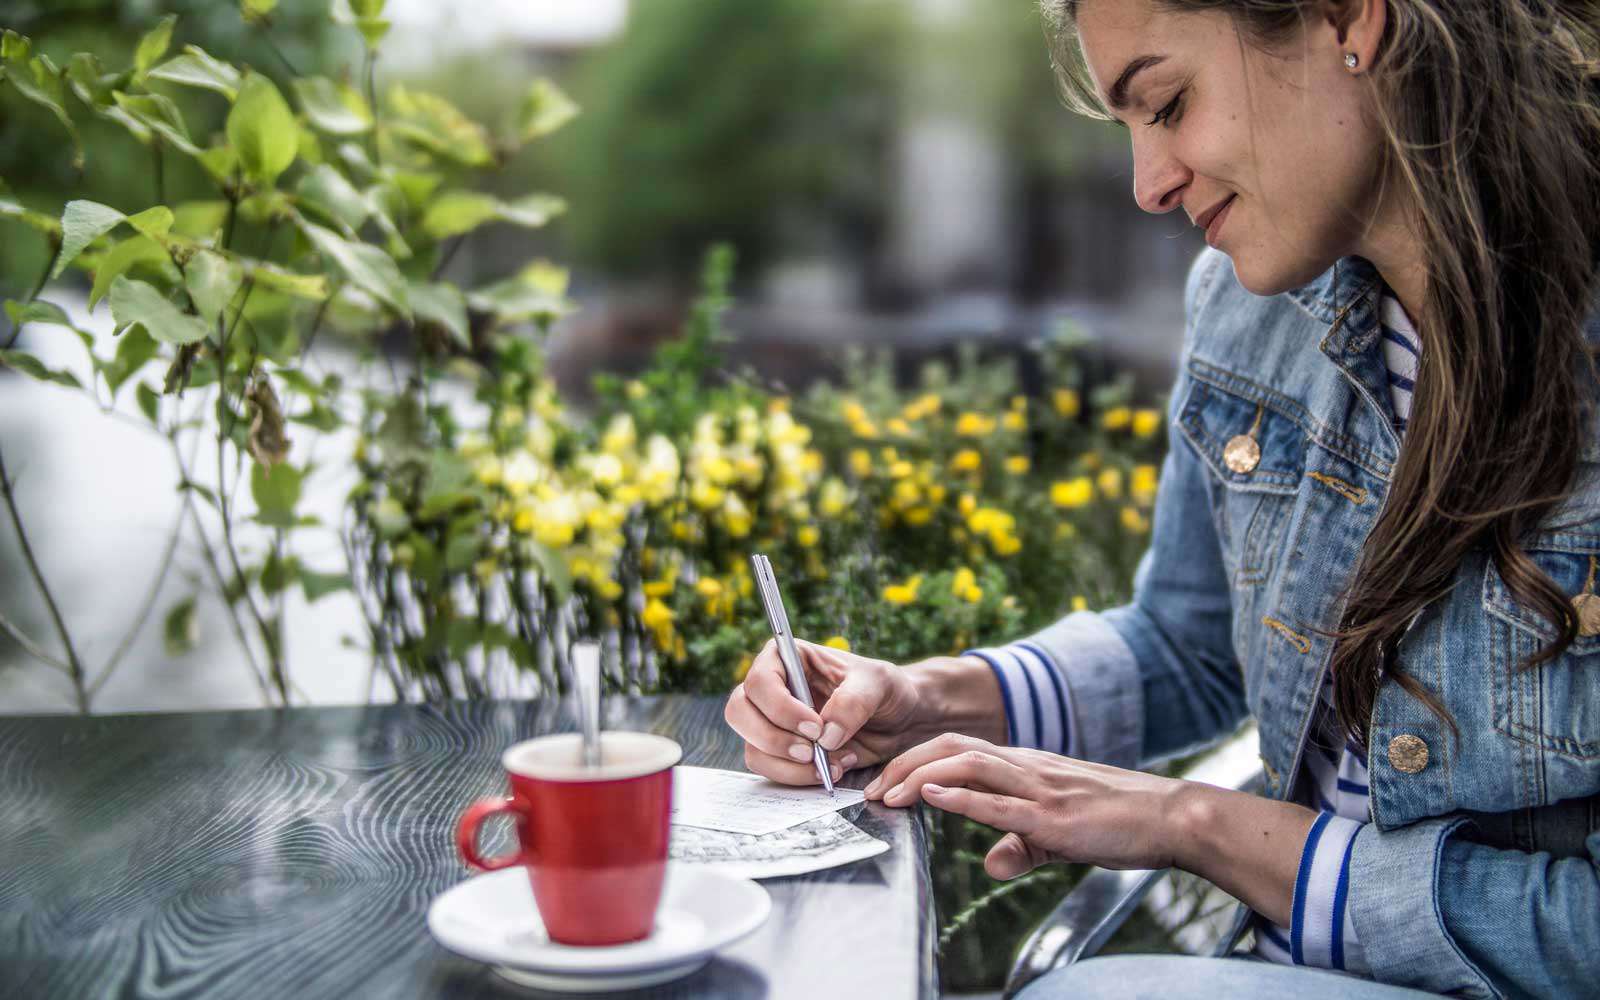 Pays-bas, Amsterdam, femme écrivant des cartes postales dans un café de la rue